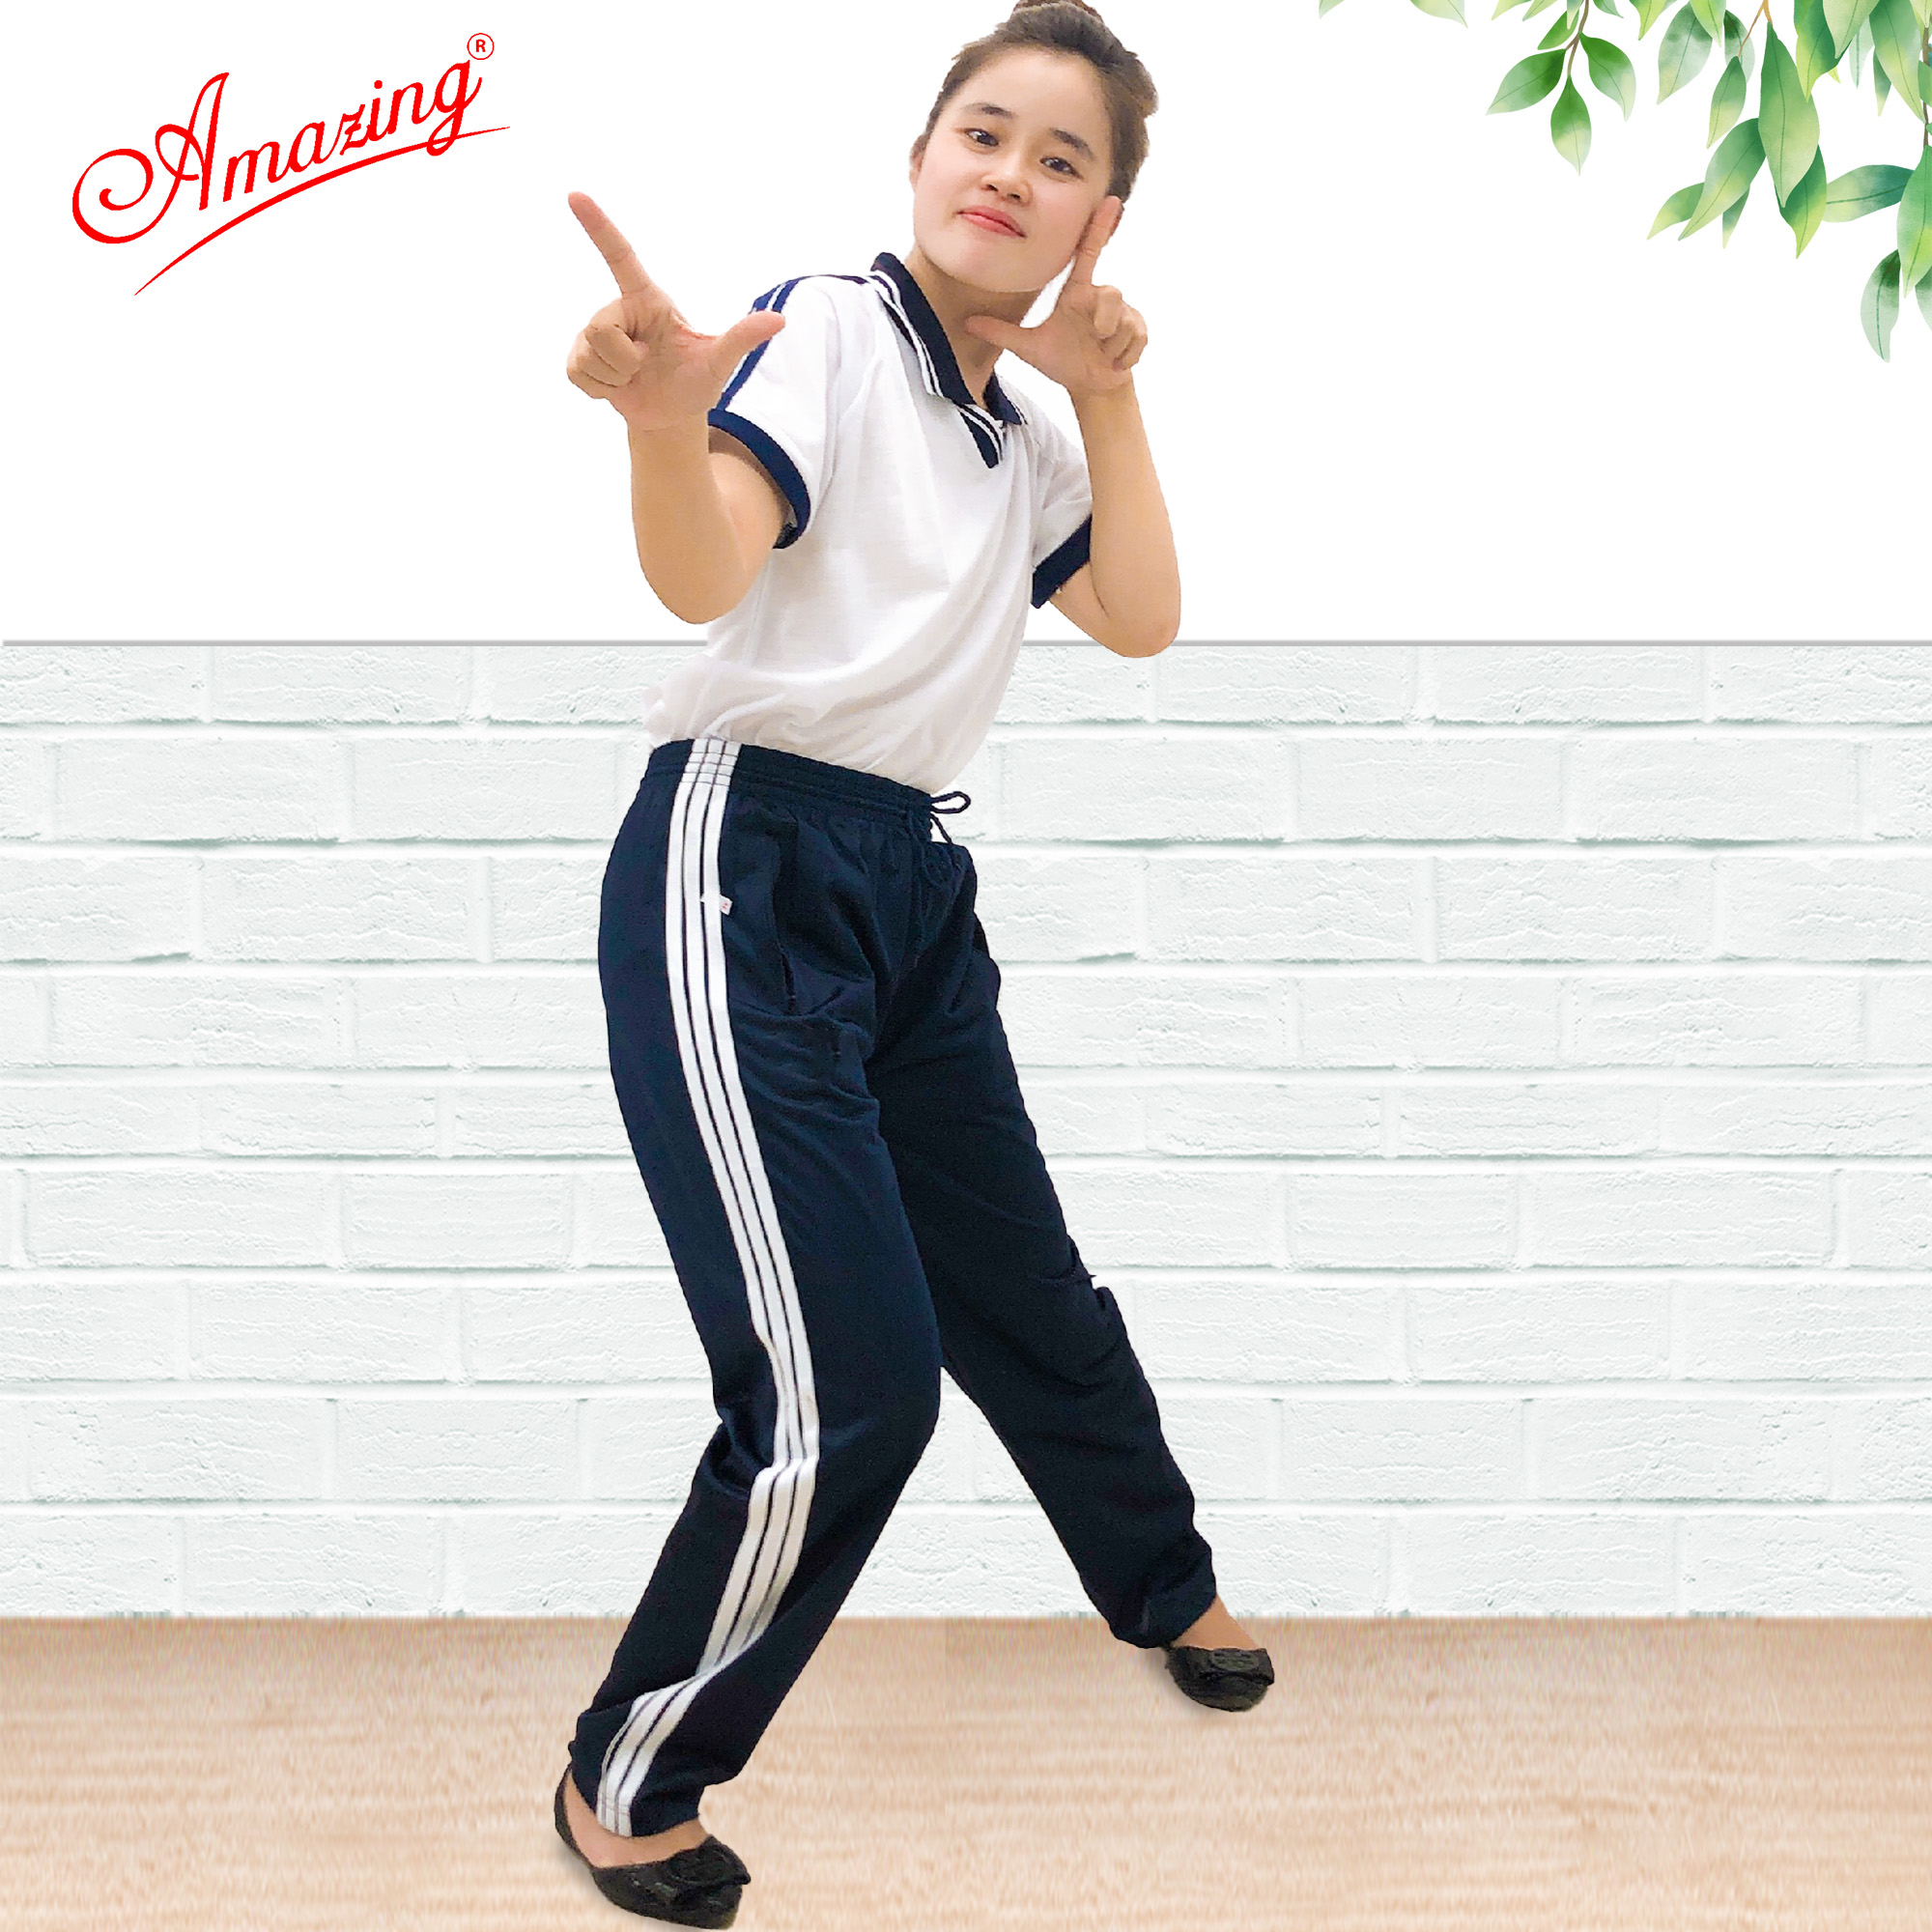 Áo thun thể dục thương hiệu Amazing cho bé gái, cổ bẻ và cổ tròn, đồng phục thể thao cho học sinh nam nữ các cấp